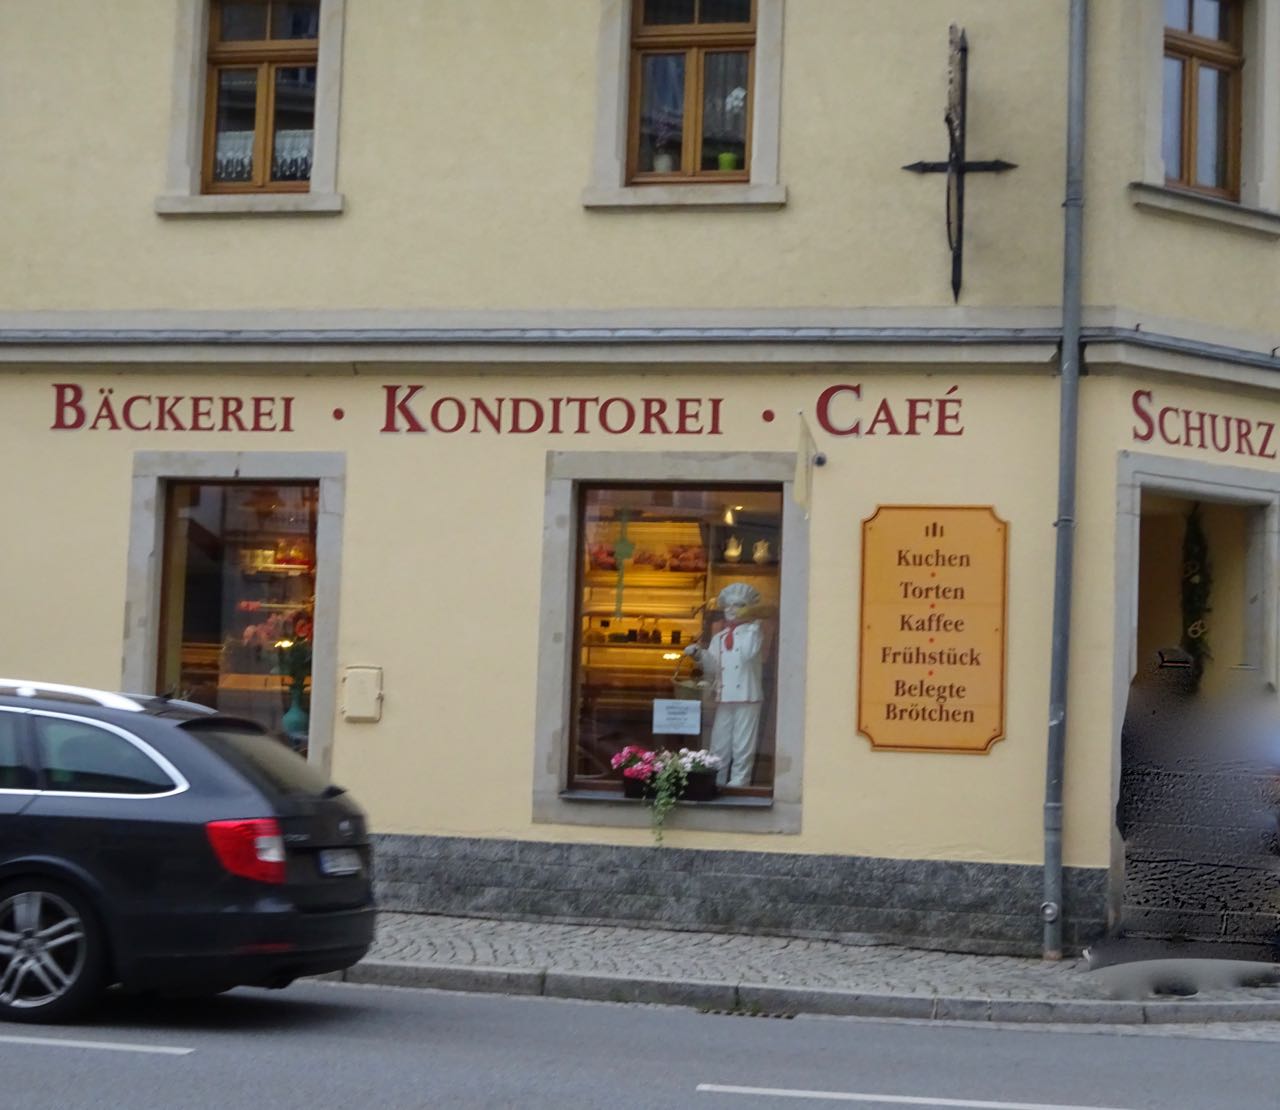 Bild 4 Bäckerei, Konditorei & Cafe Schurz Inh. Dirk Schurz in Bad Schandau